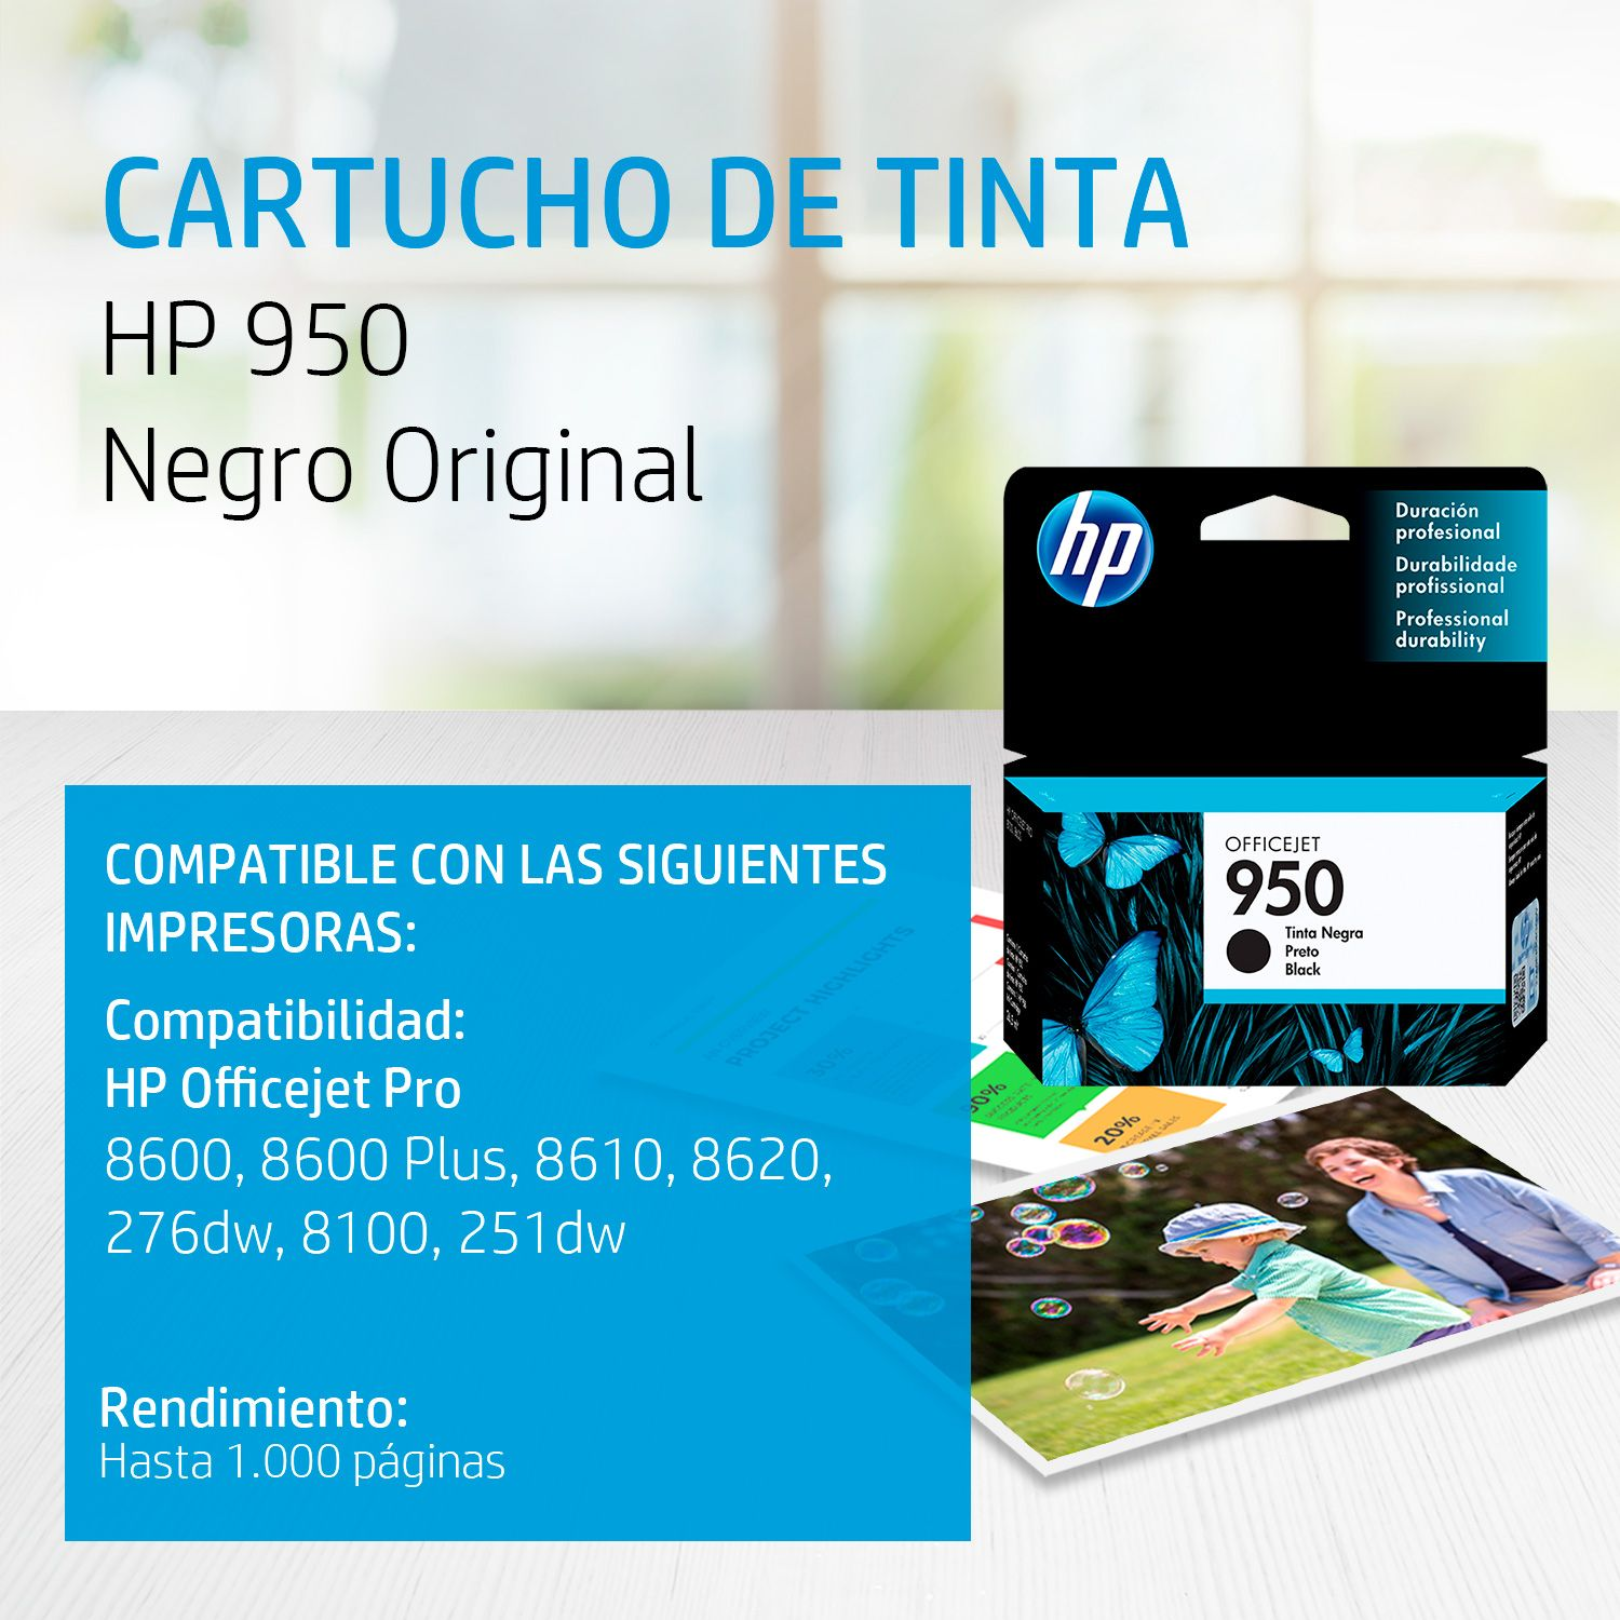 Cartucho de tinta HP 950 Negro (CN049AL) Officejet 8100/8600 1000 Pag.